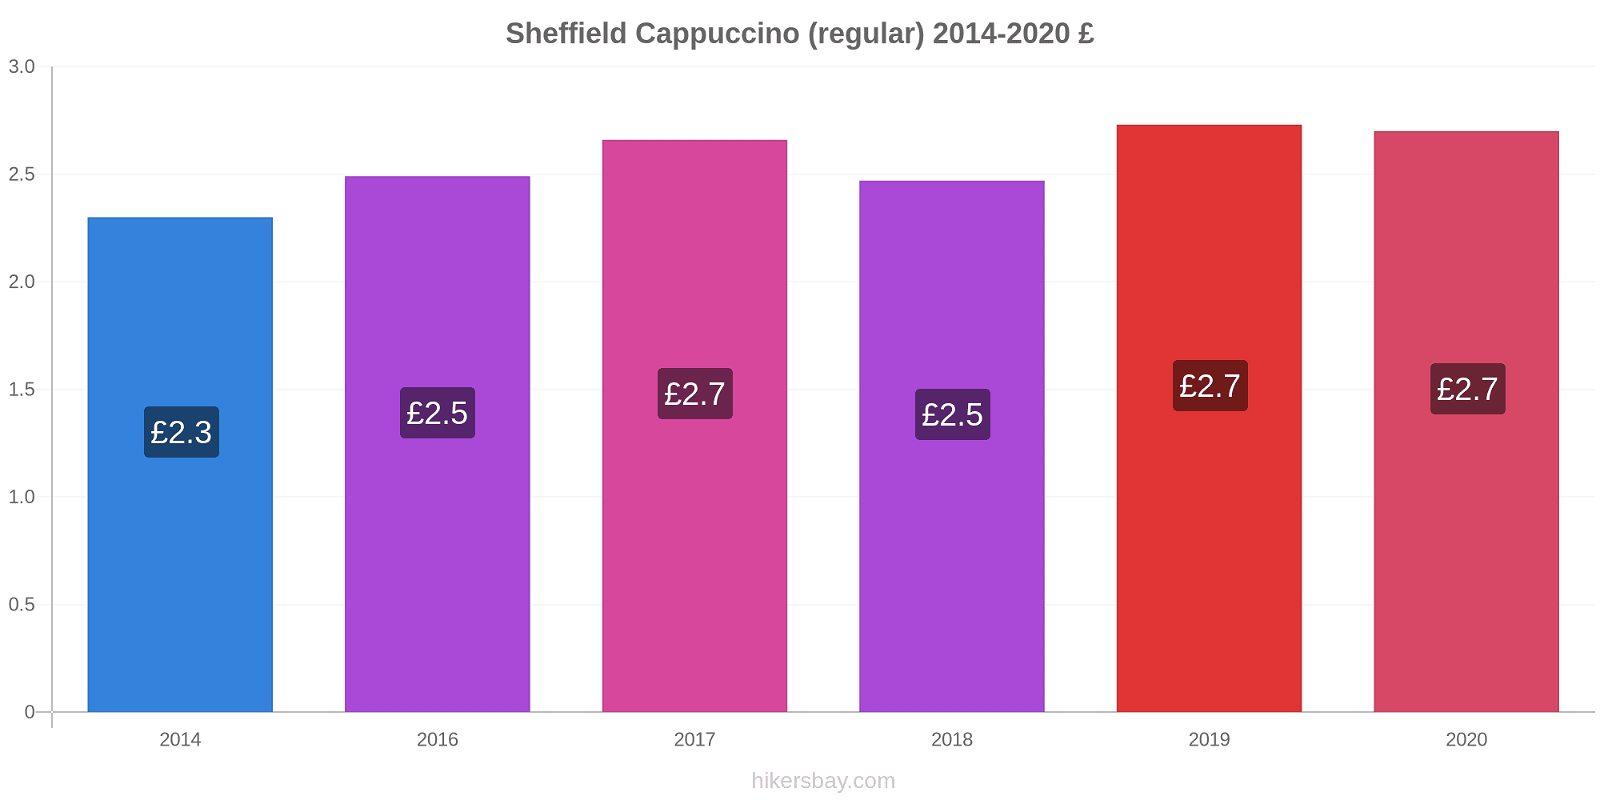 Sheffield price changes Cappuccino (regular) hikersbay.com